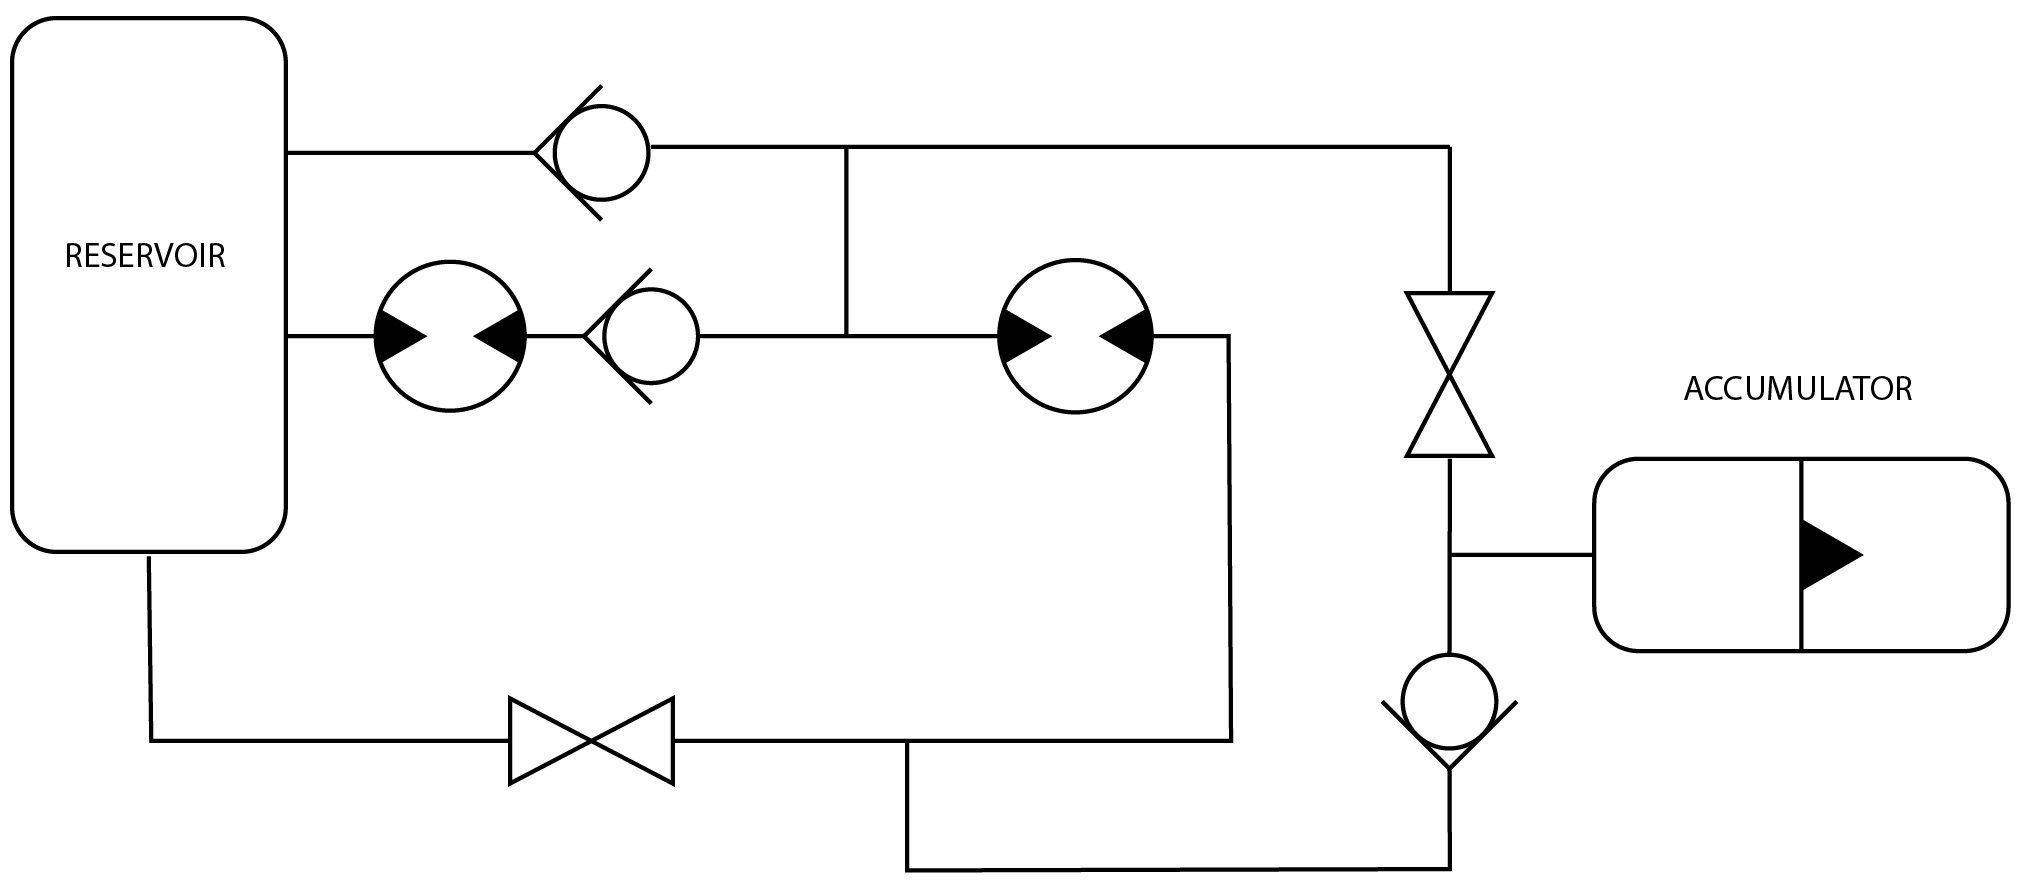 Hydraulic circuit